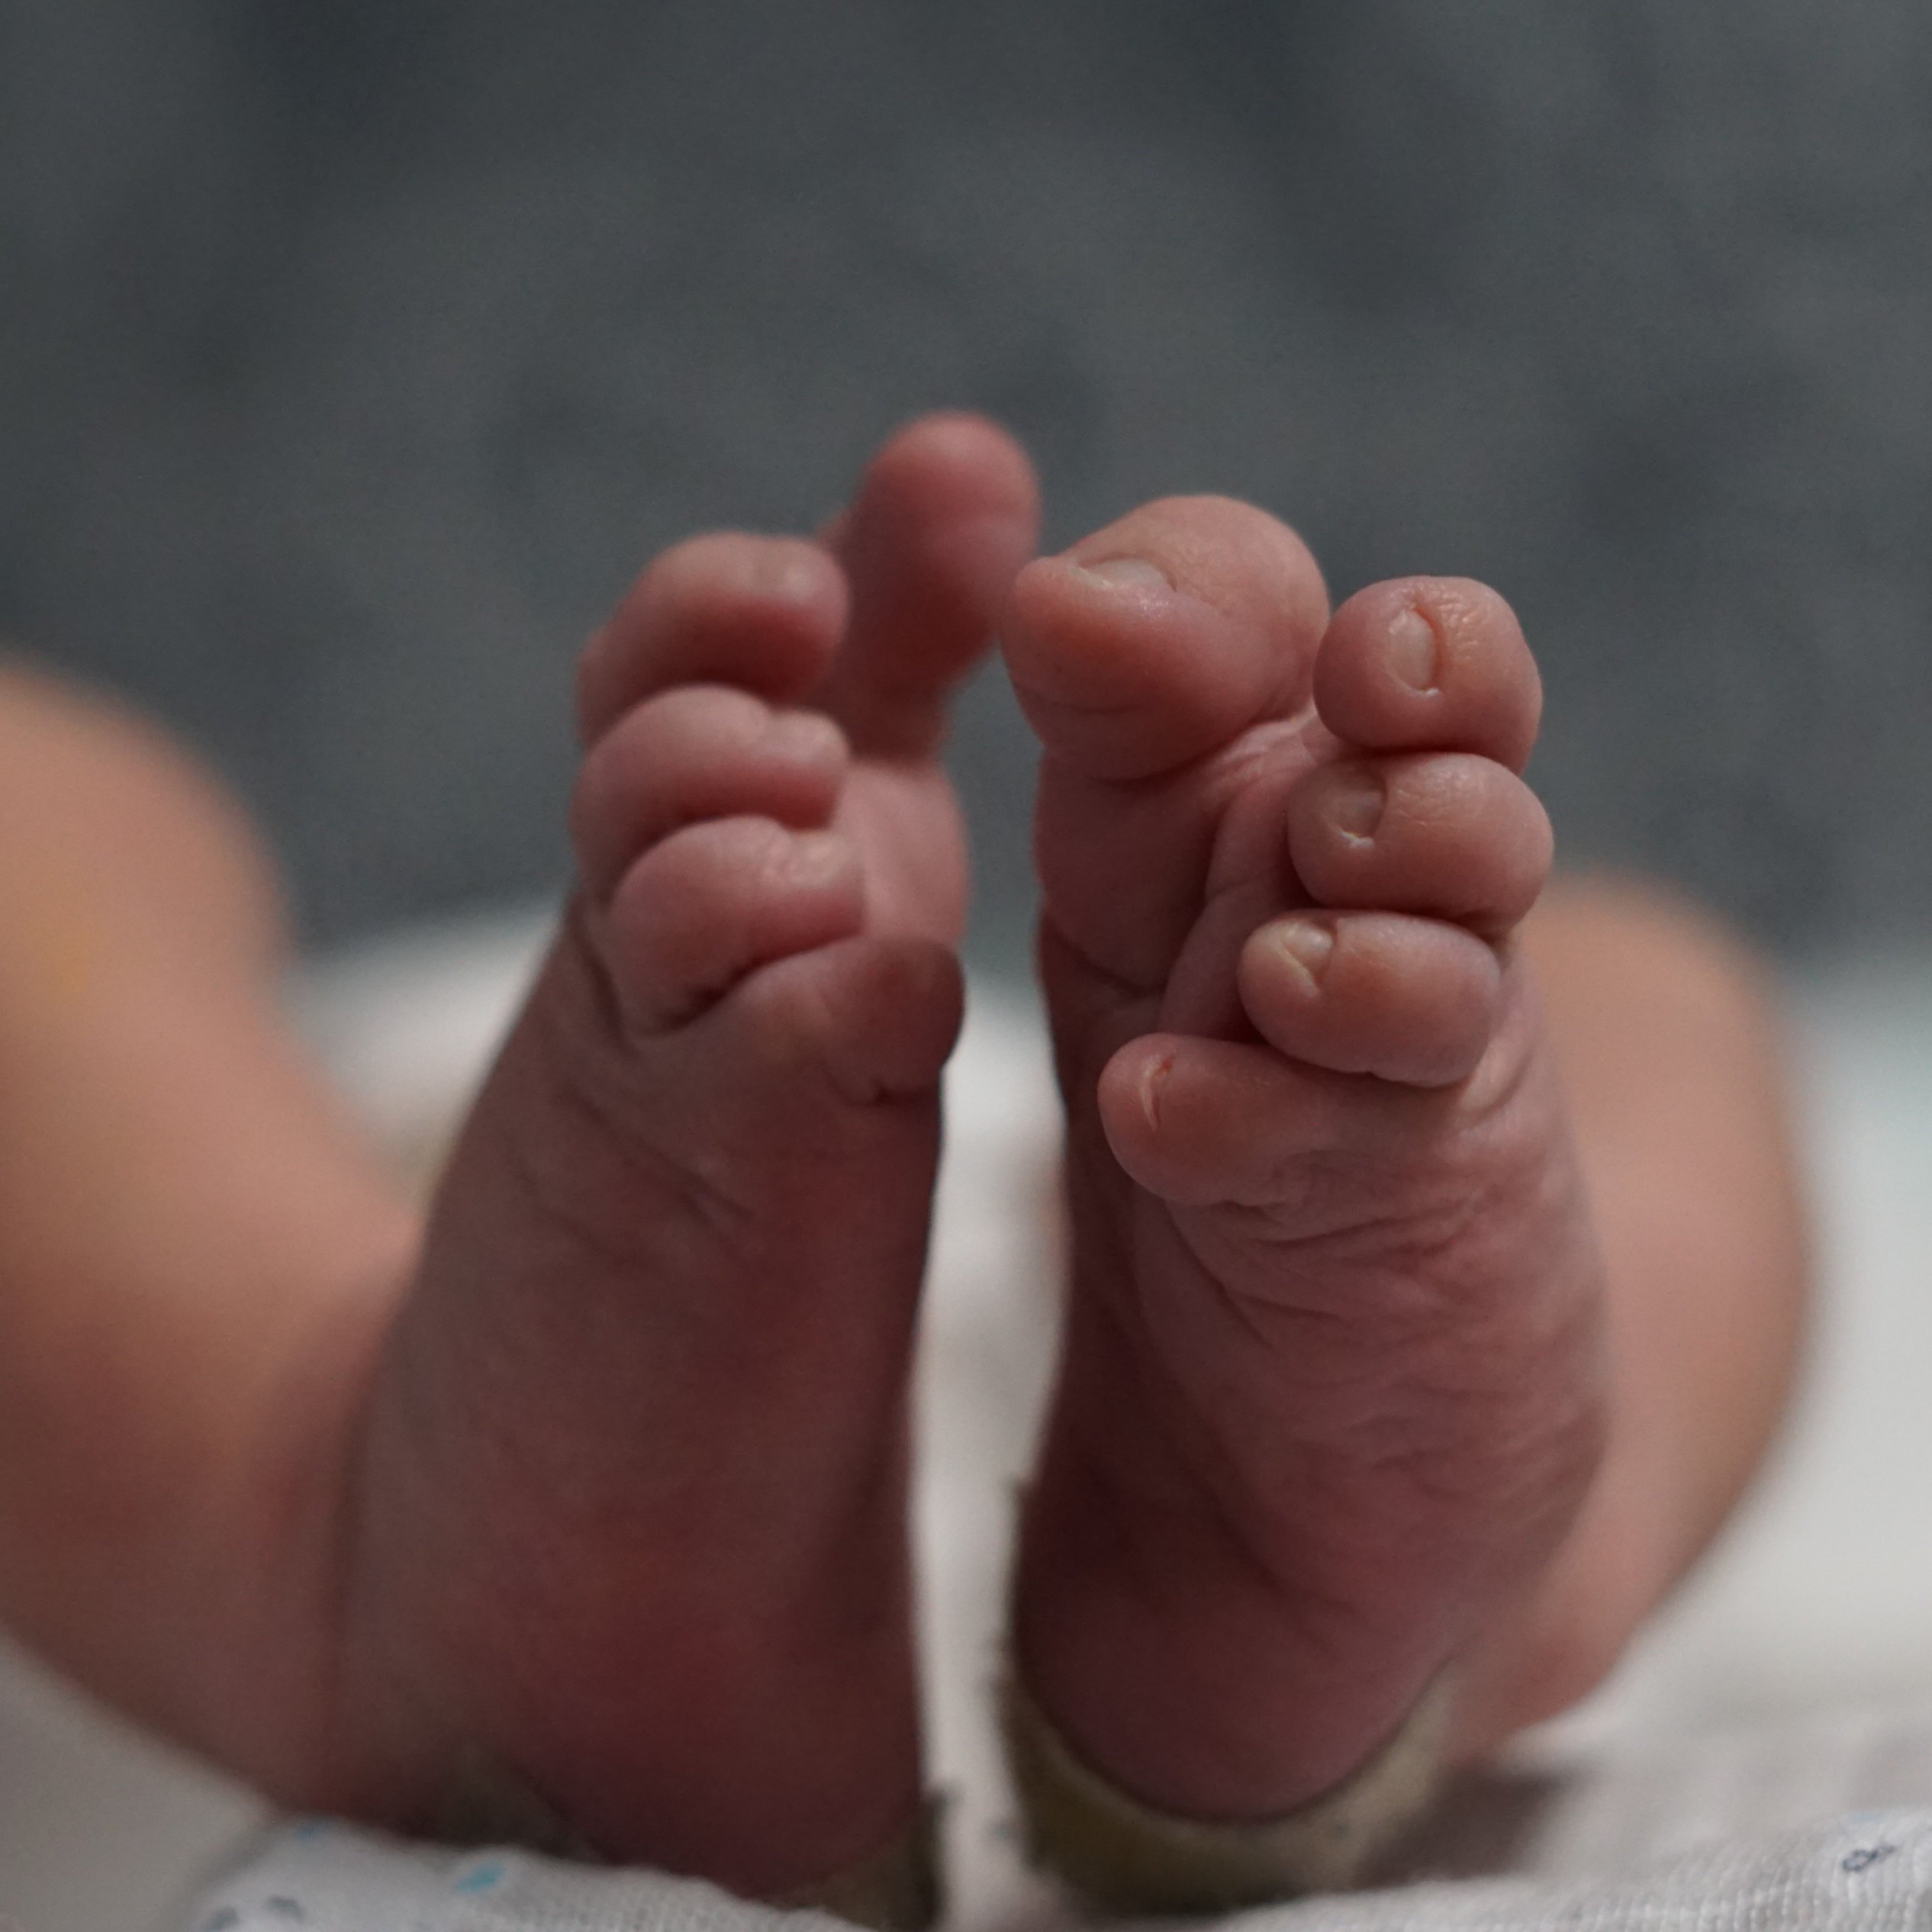 ¿Qué protocolos siguen los hospitales para evitar el intercambio de bebés?